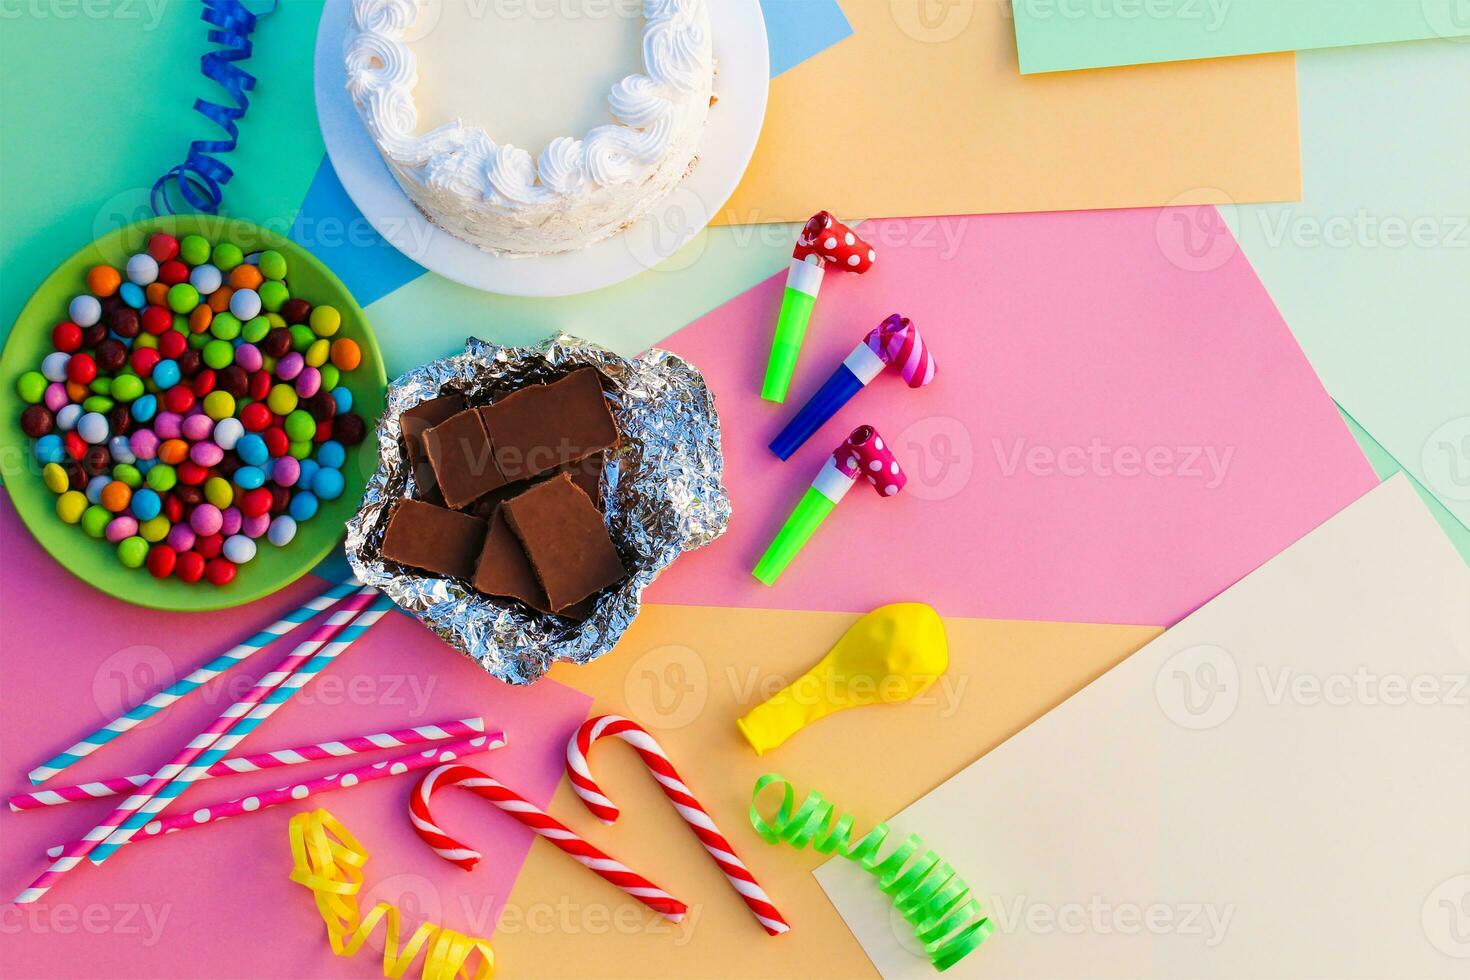 kaka, godis, choklad, visselpipor, streamers, ballonger på Semester tabell. begrepp av barns födelsedag fest. se topp. foto